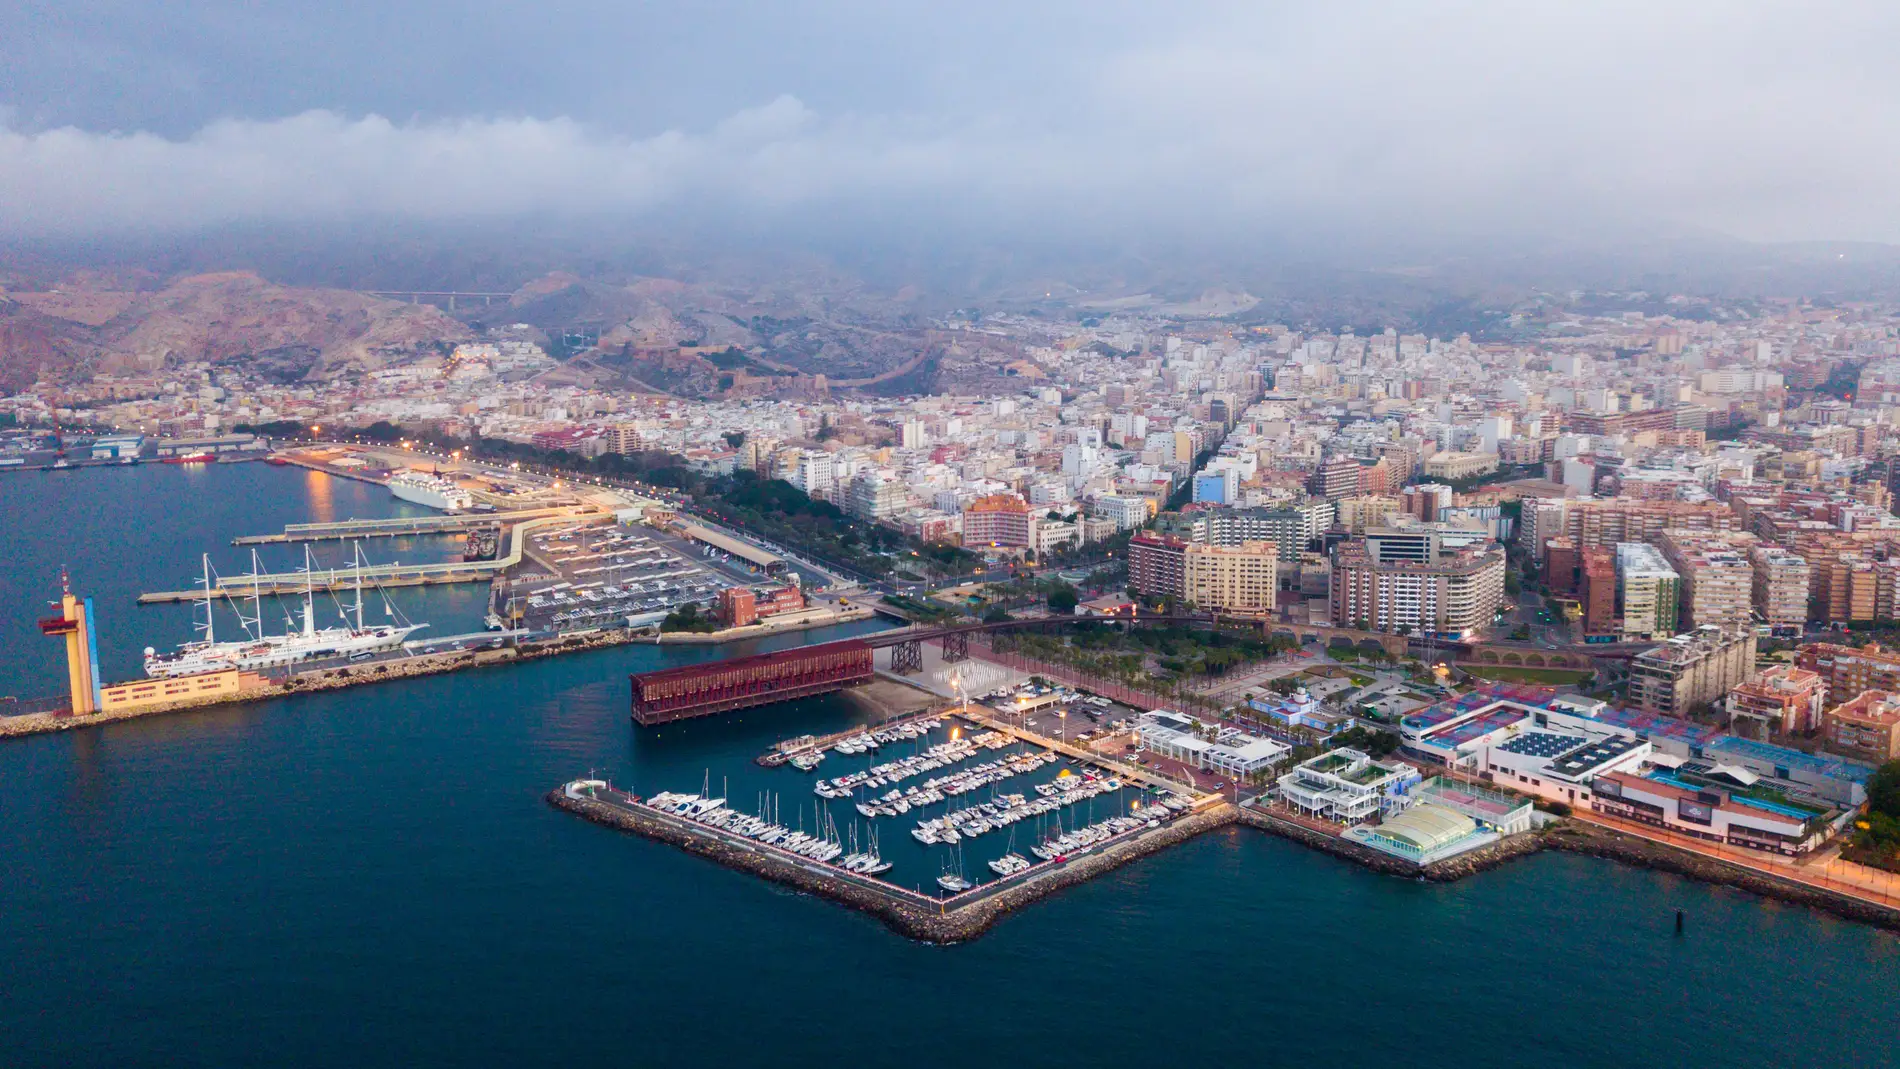 Vista aérea de Almería